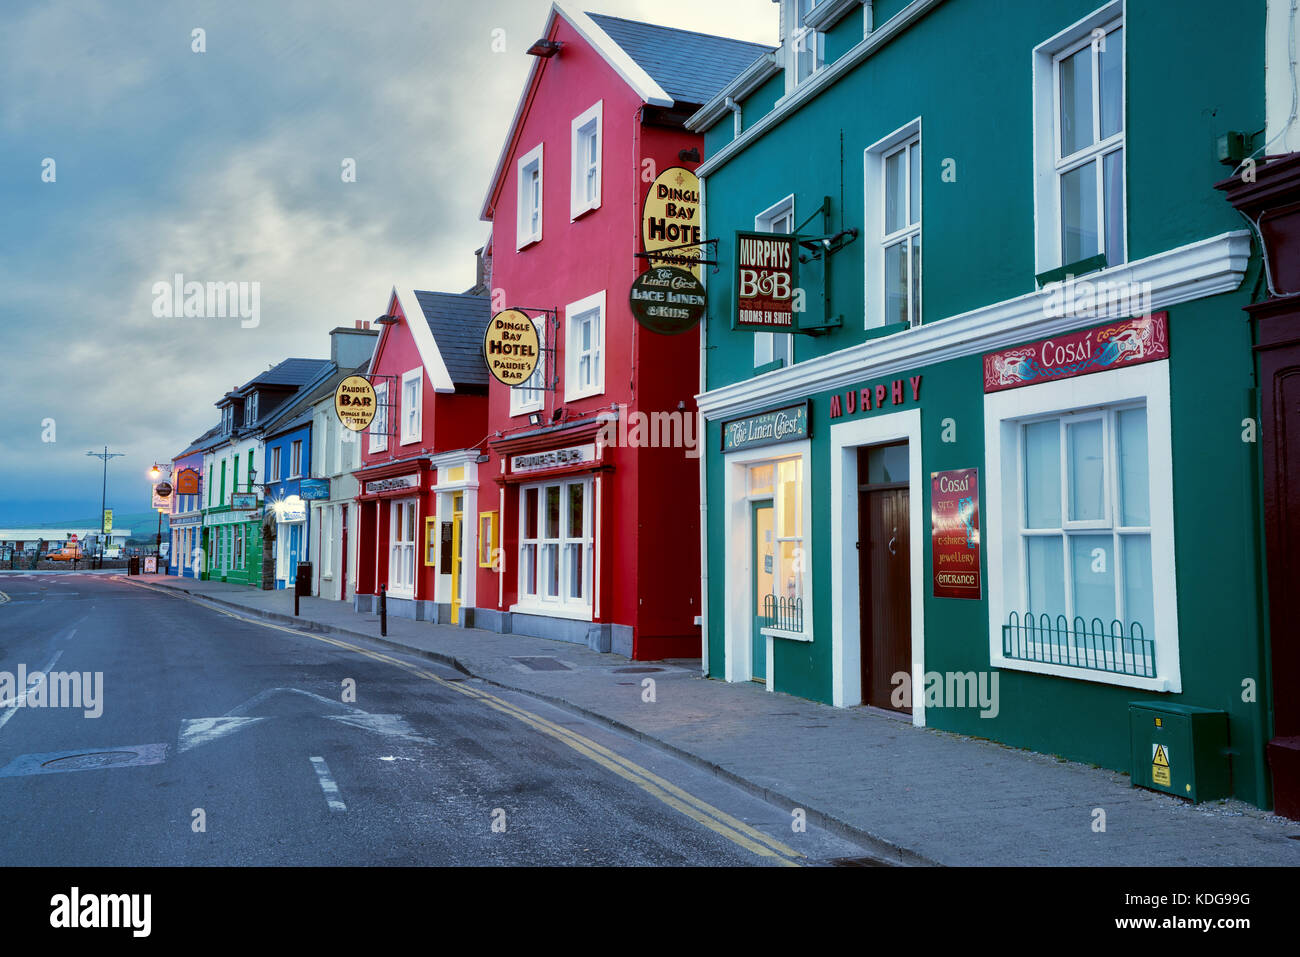 Façades colorées à Dingle, comté de Kerry, Irlande Banque D'Images